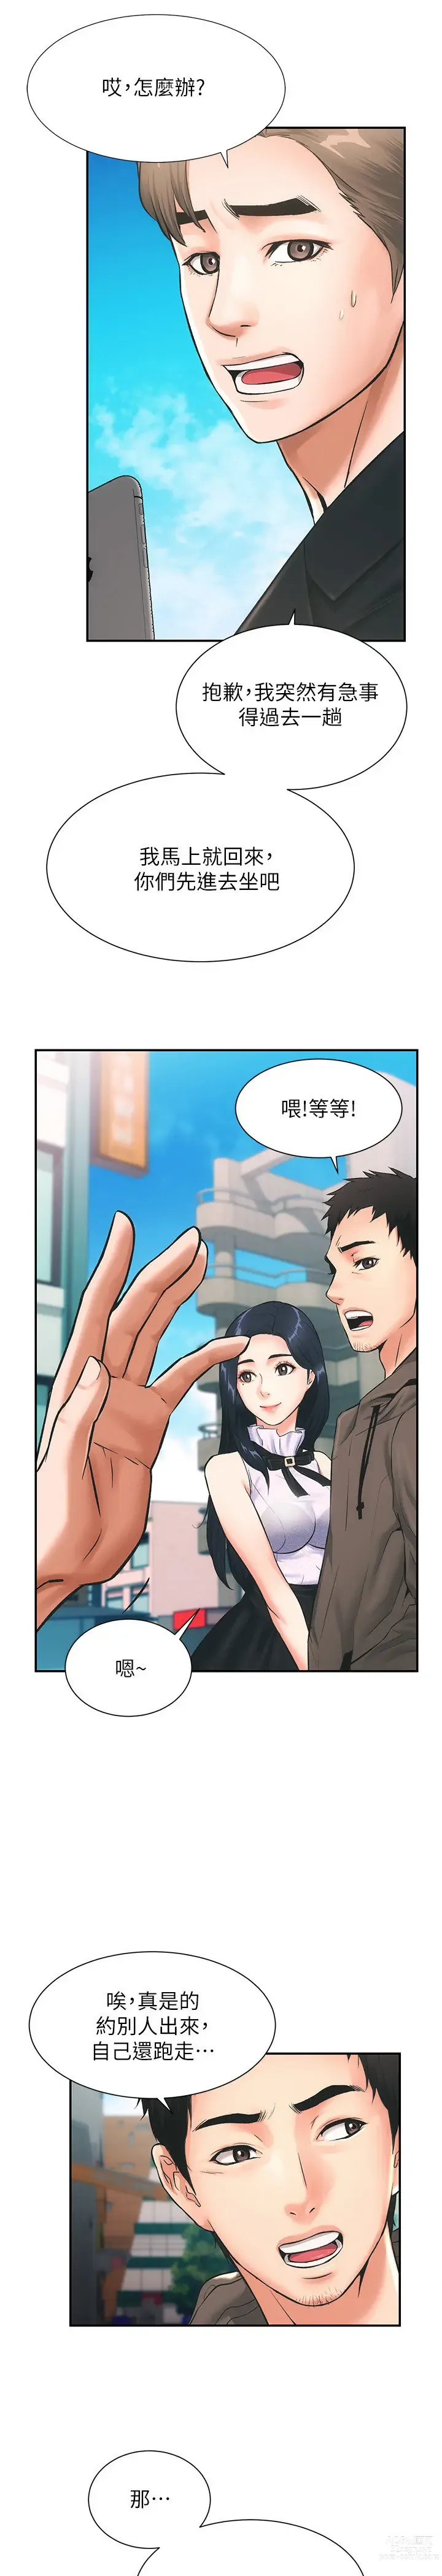 Page 26 of manga 弟妹诊撩室